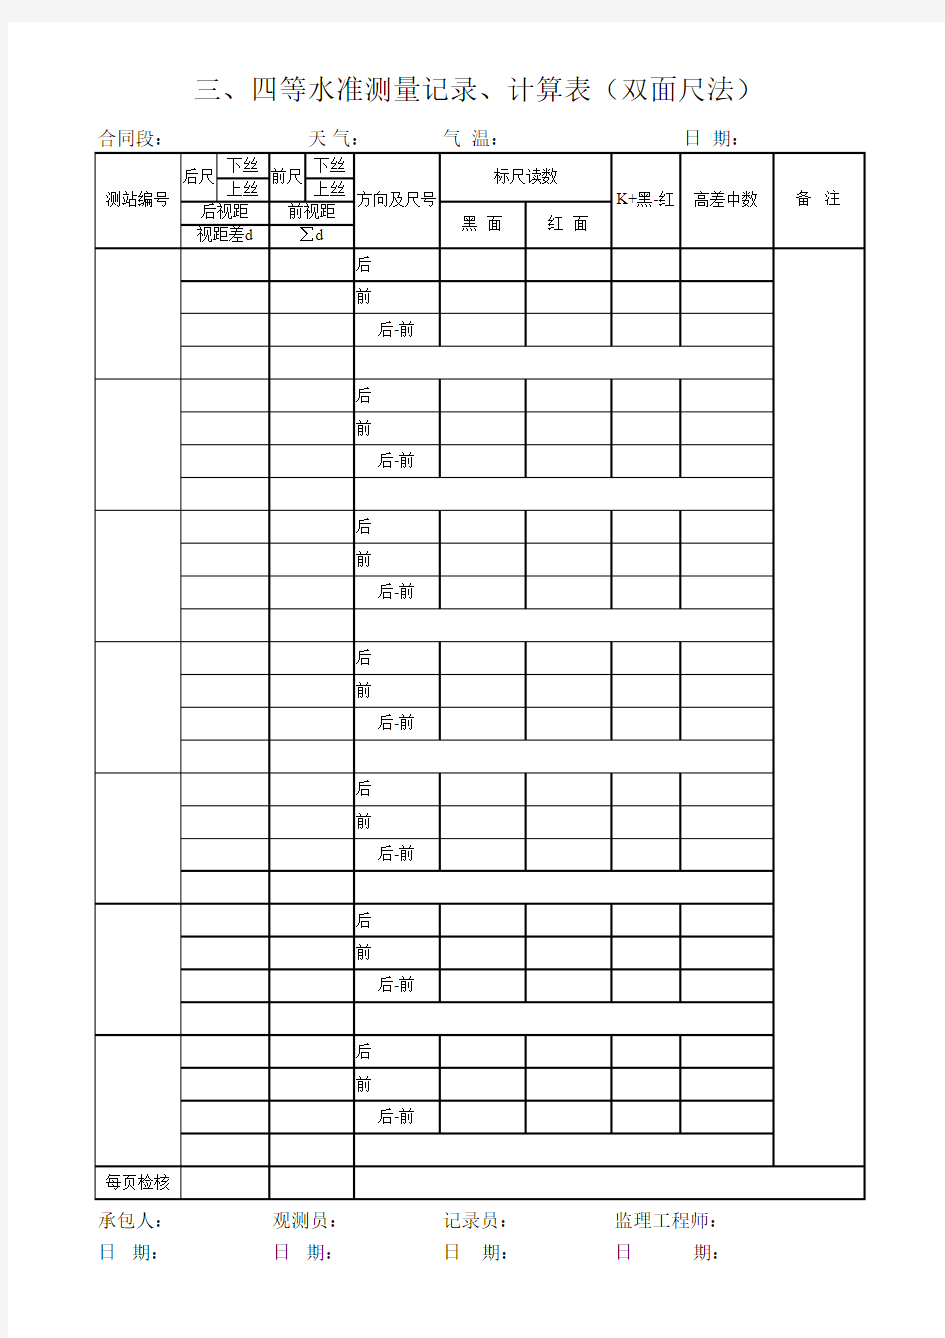 三、四等水准测量记录、计算表(双面尺法)